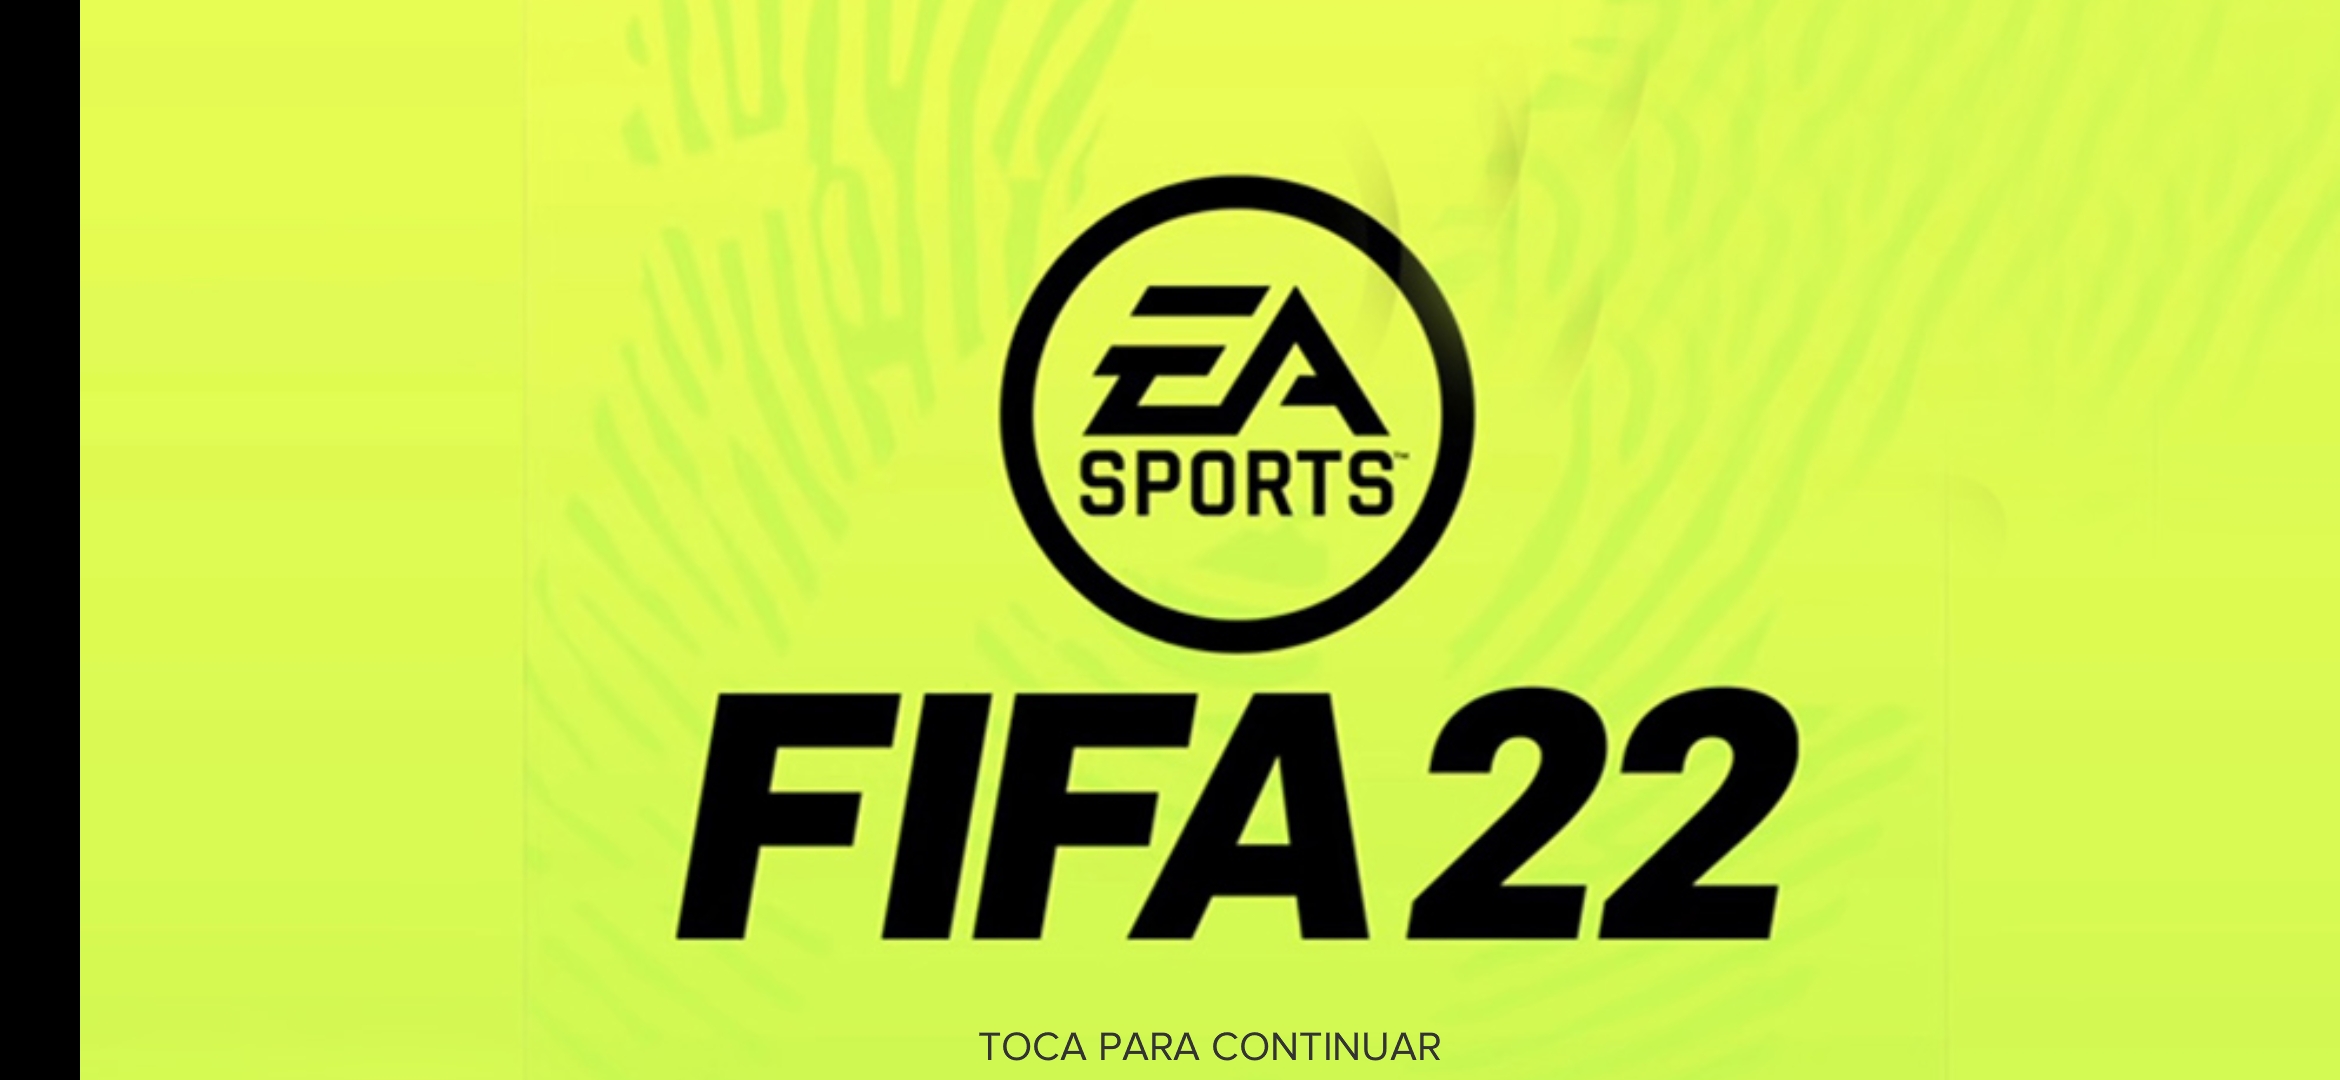 Fifa 22 купить keyking ru. EA FIFA 22. Логотип FIFA 22. FIFA 2022 логотип. FIFA надпись.